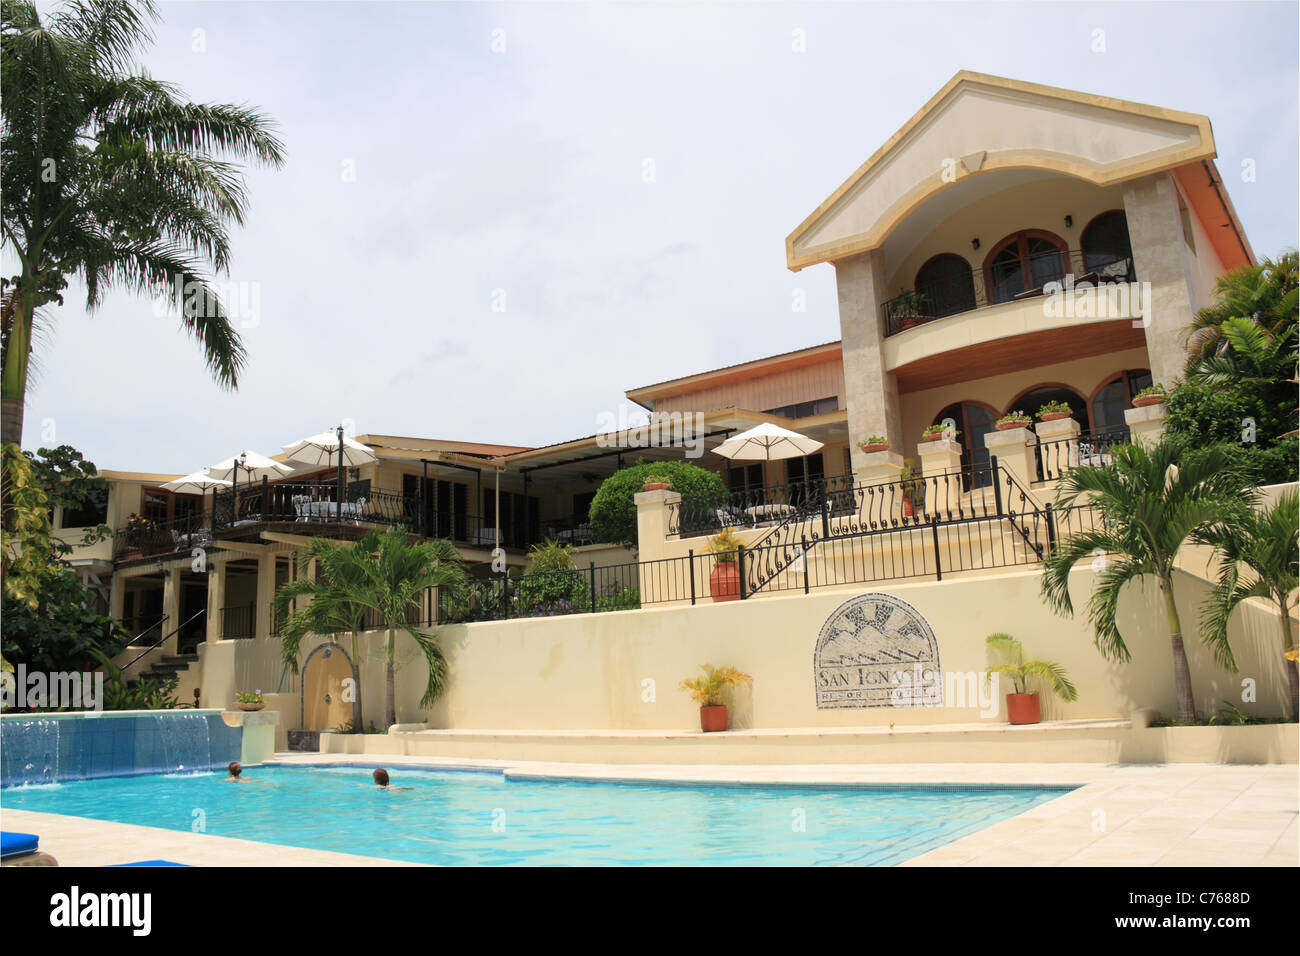 San Ignacio Resort Hotel, 18 Buena Vista St, San Ignacio, Cayo, west Belize, Central America Stock Photo